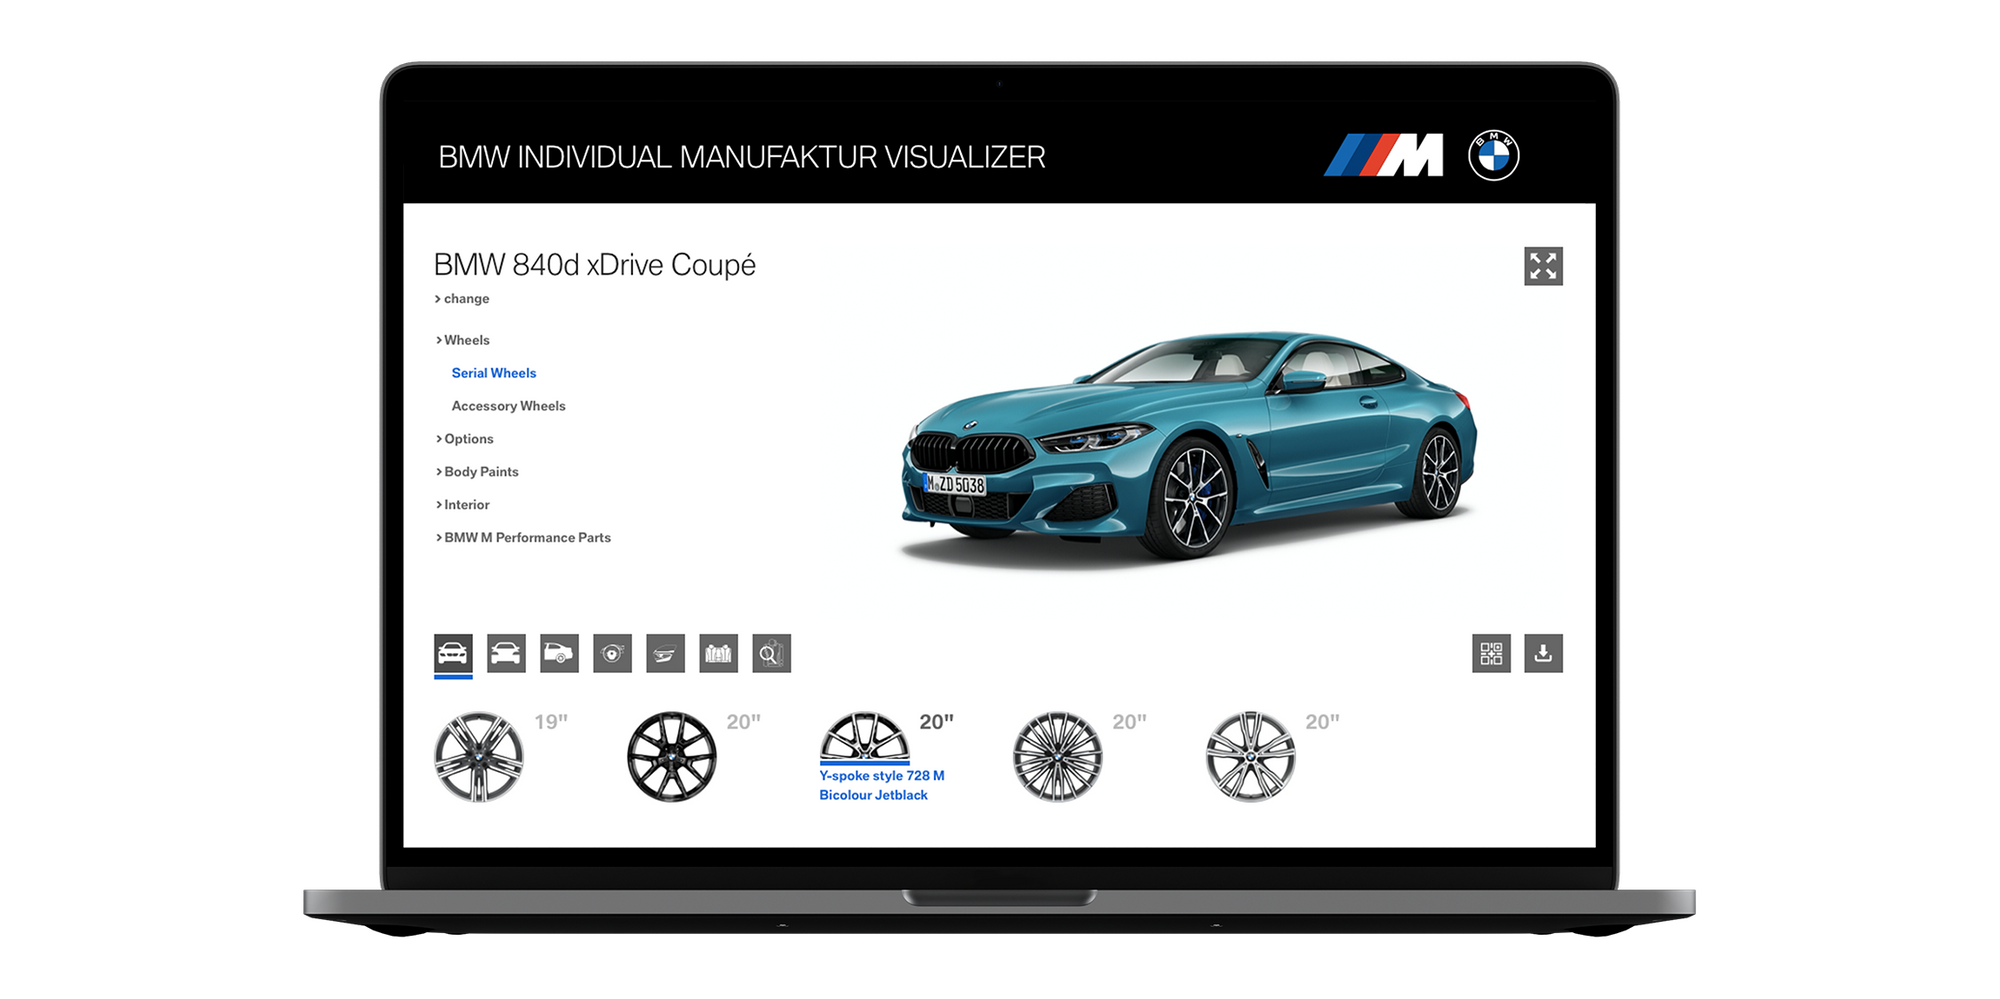 BMW Individual Manufaktur Visualizer technology